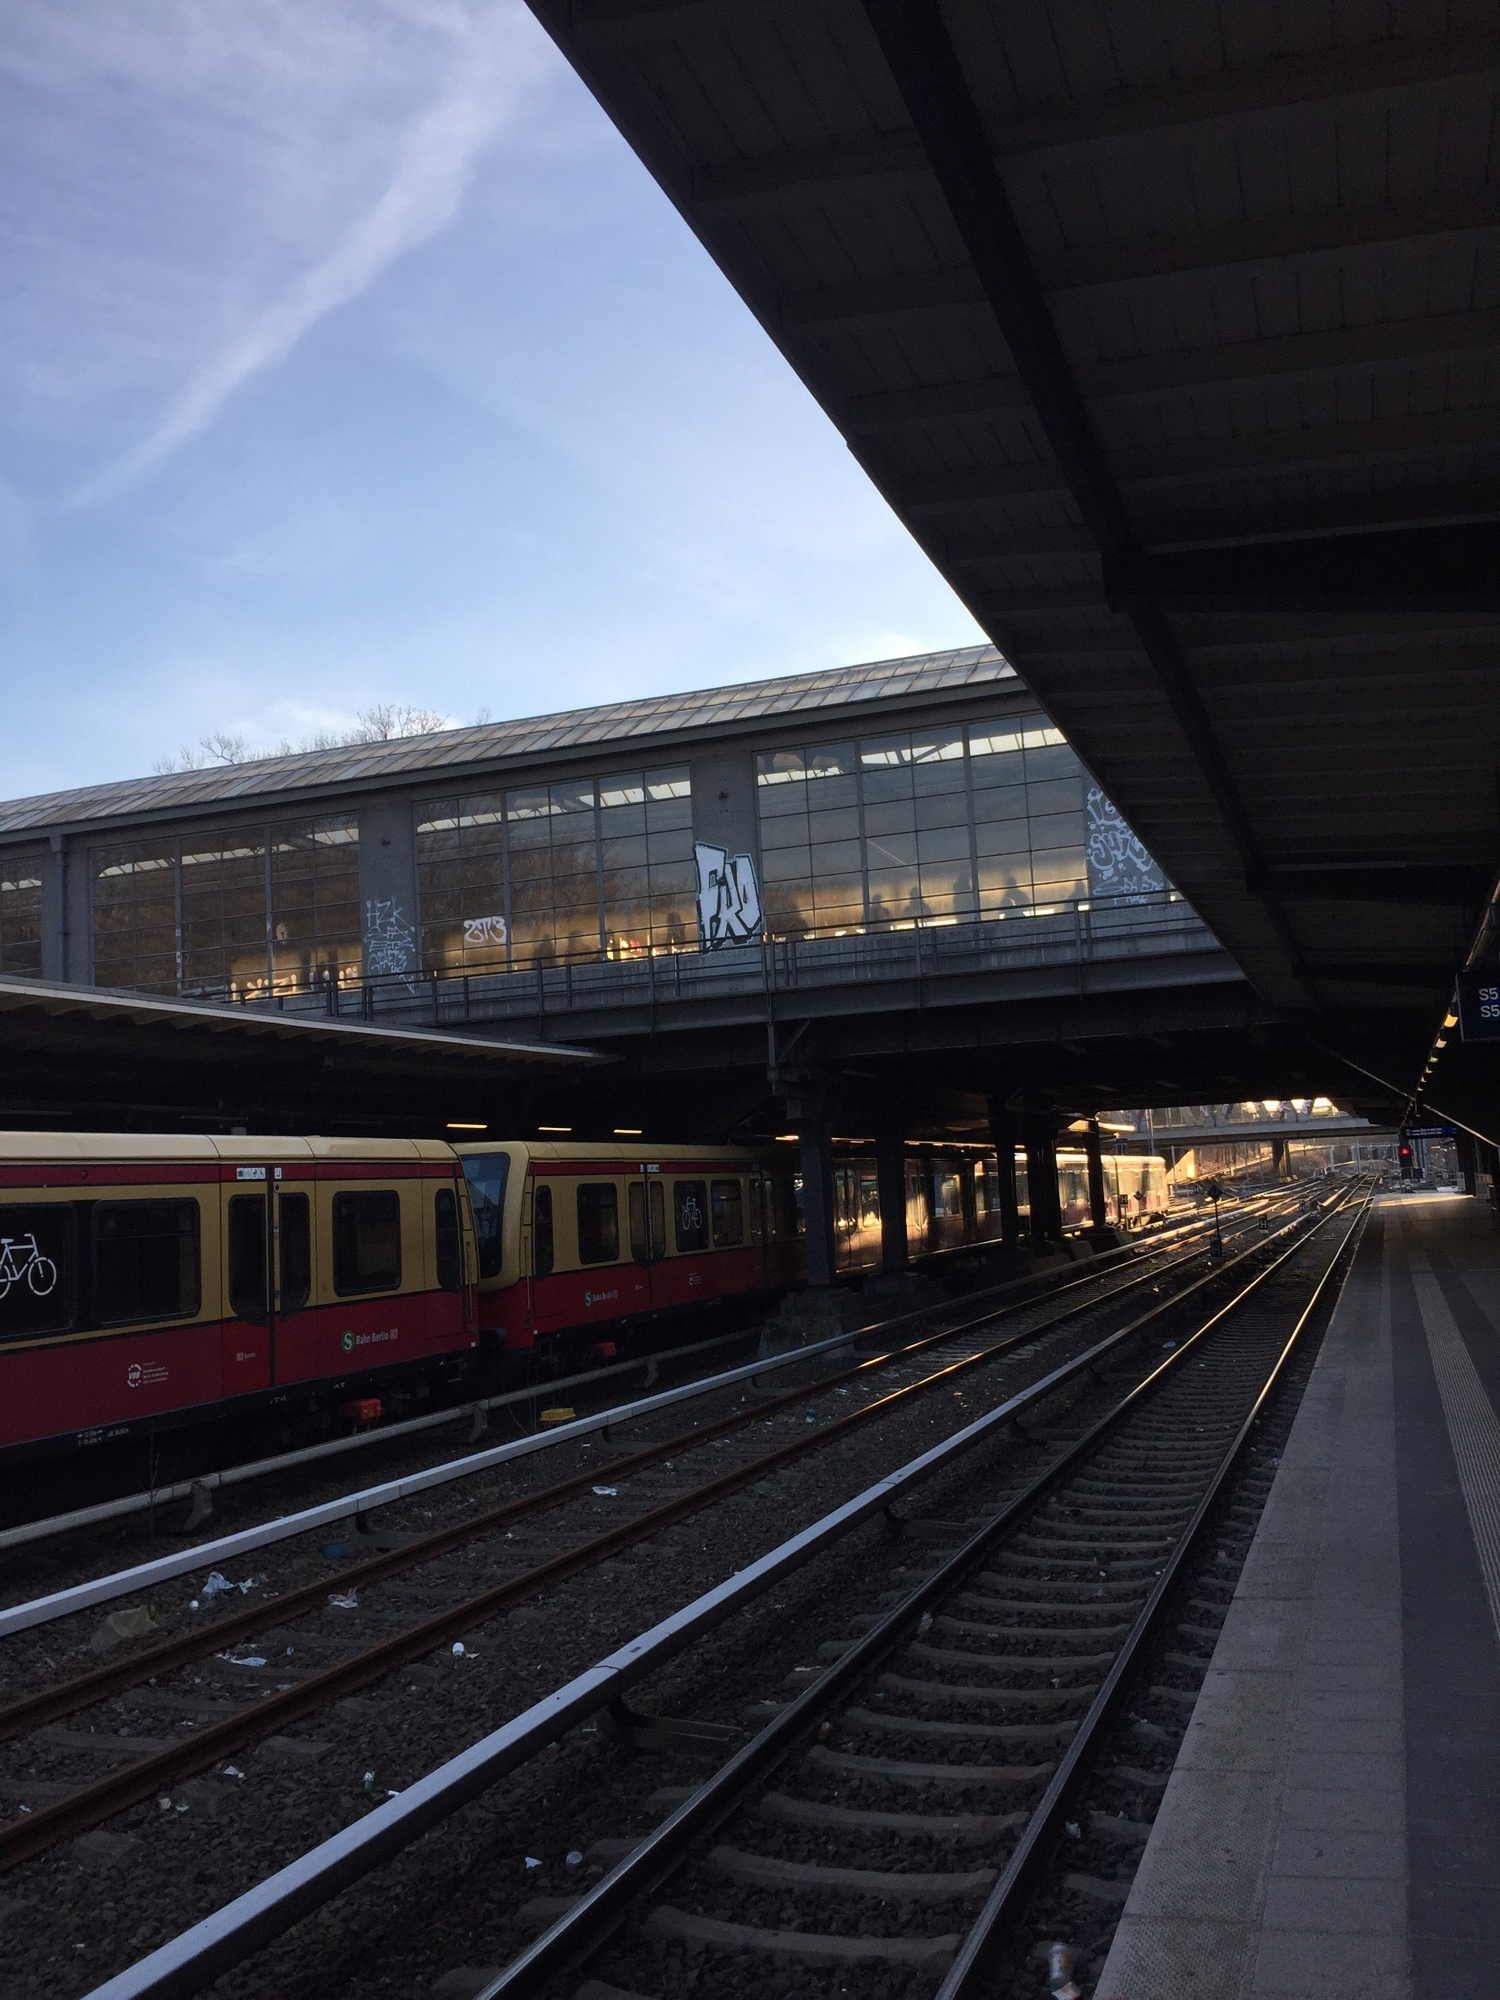 Bahnhof Westkreuz in der Abendsonne, vom unteren Bahnsteig der S3/S5/S7 Richtung S-Bahn-Ring Bahnsteig fotografiert